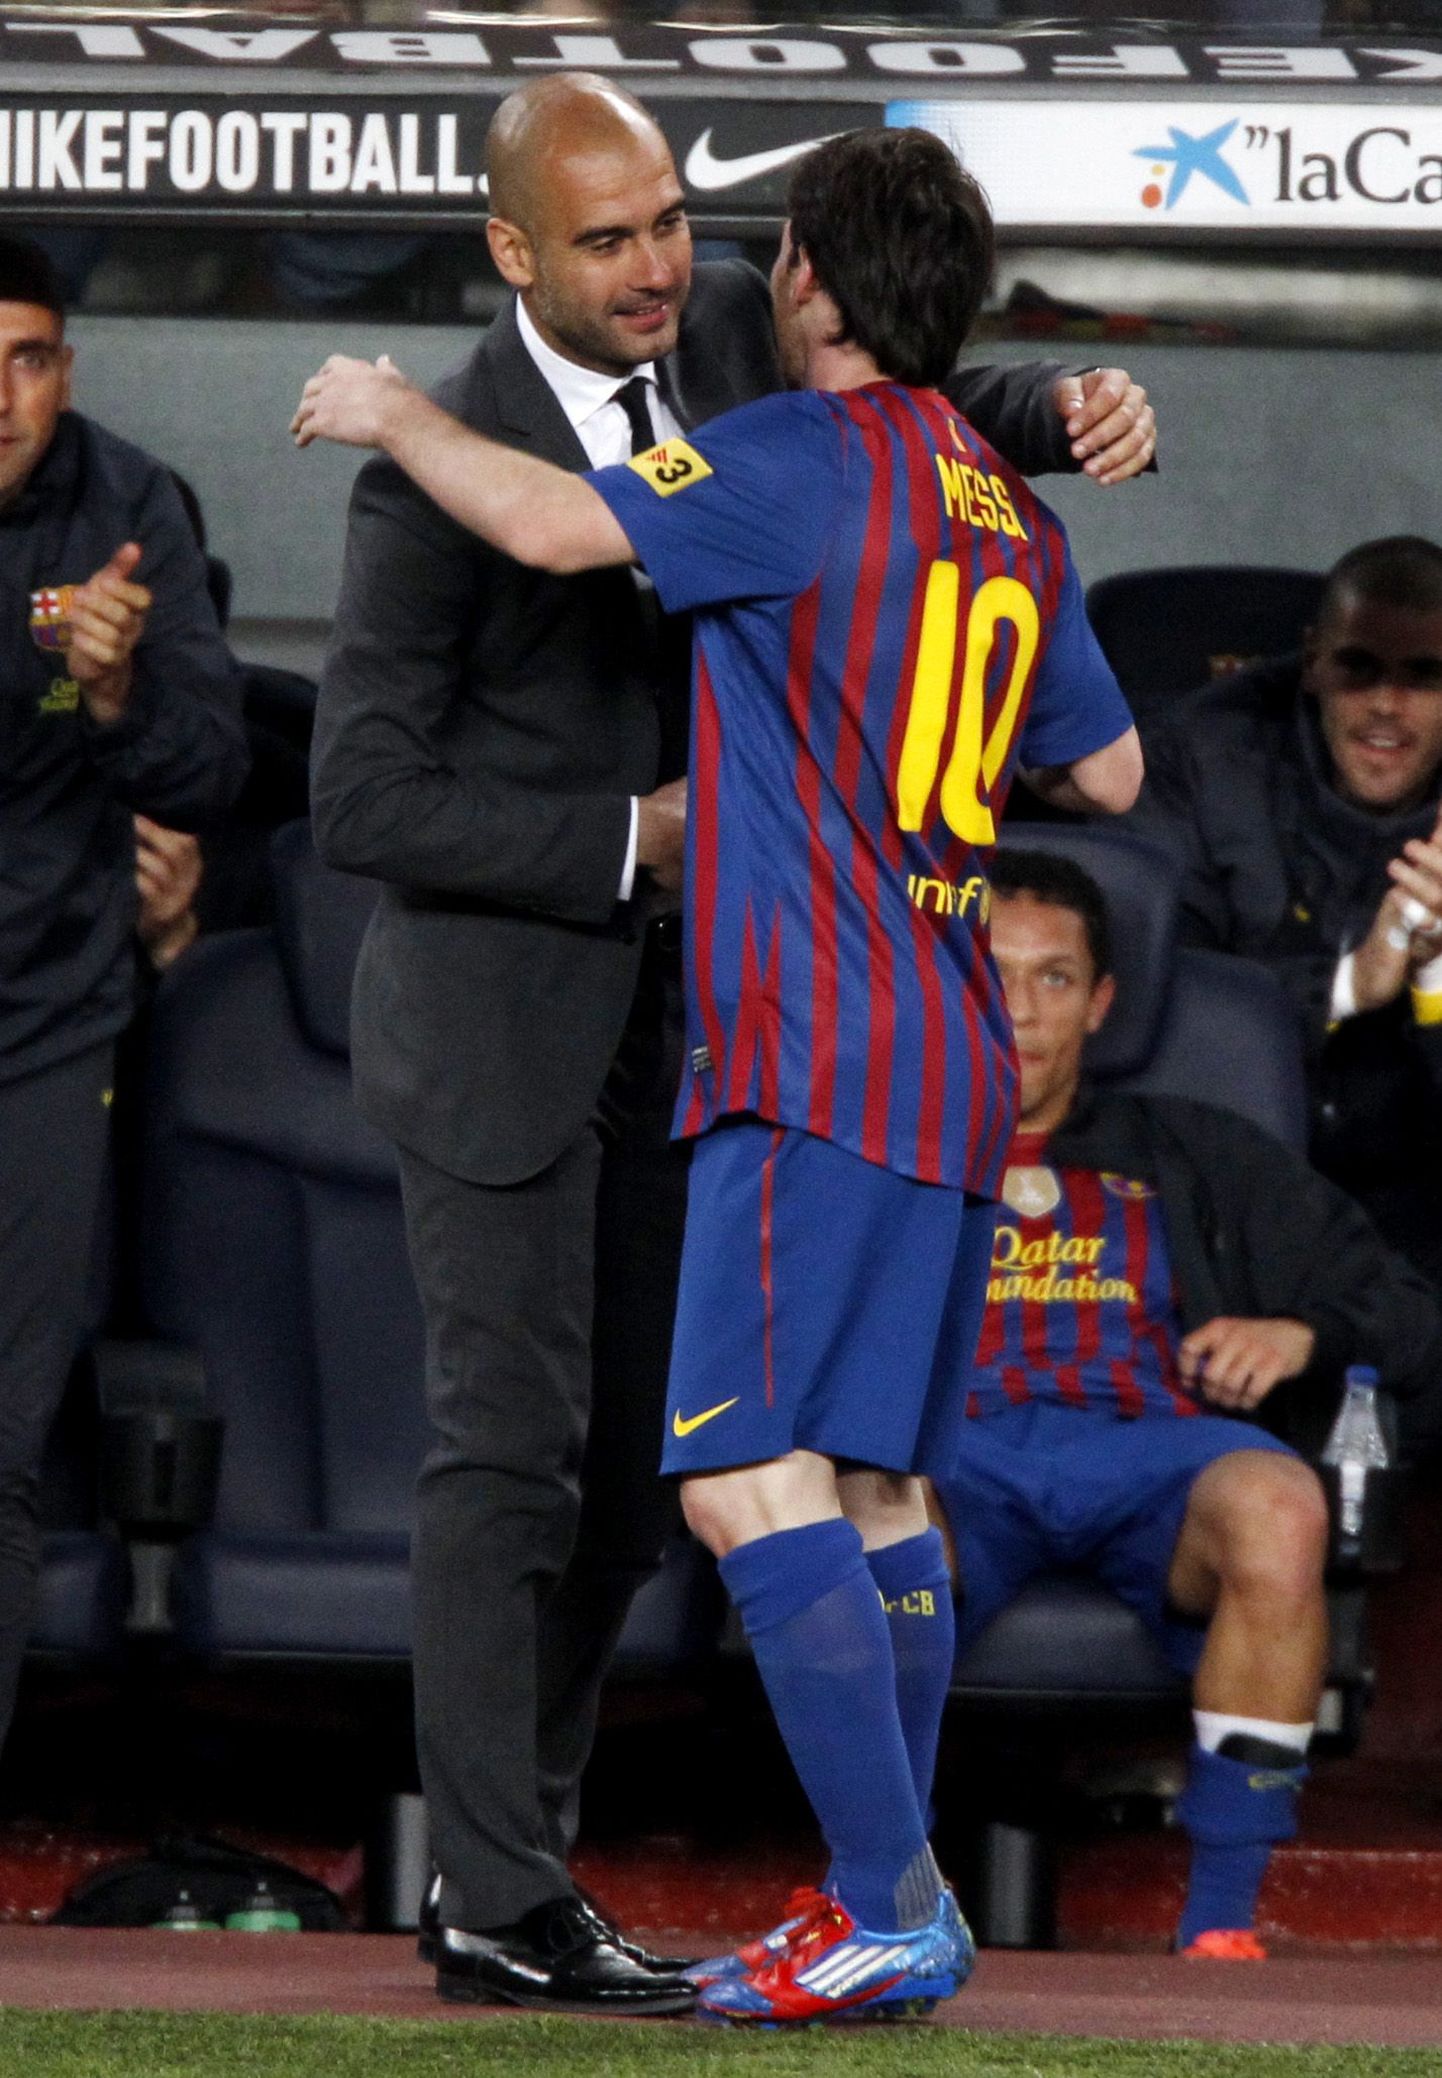 Rekordimees Lionel Messi tänas pärast viimase värava löömist hooaja lõpus ametist lahkuvat peatreenerit Pep Guardiolat.